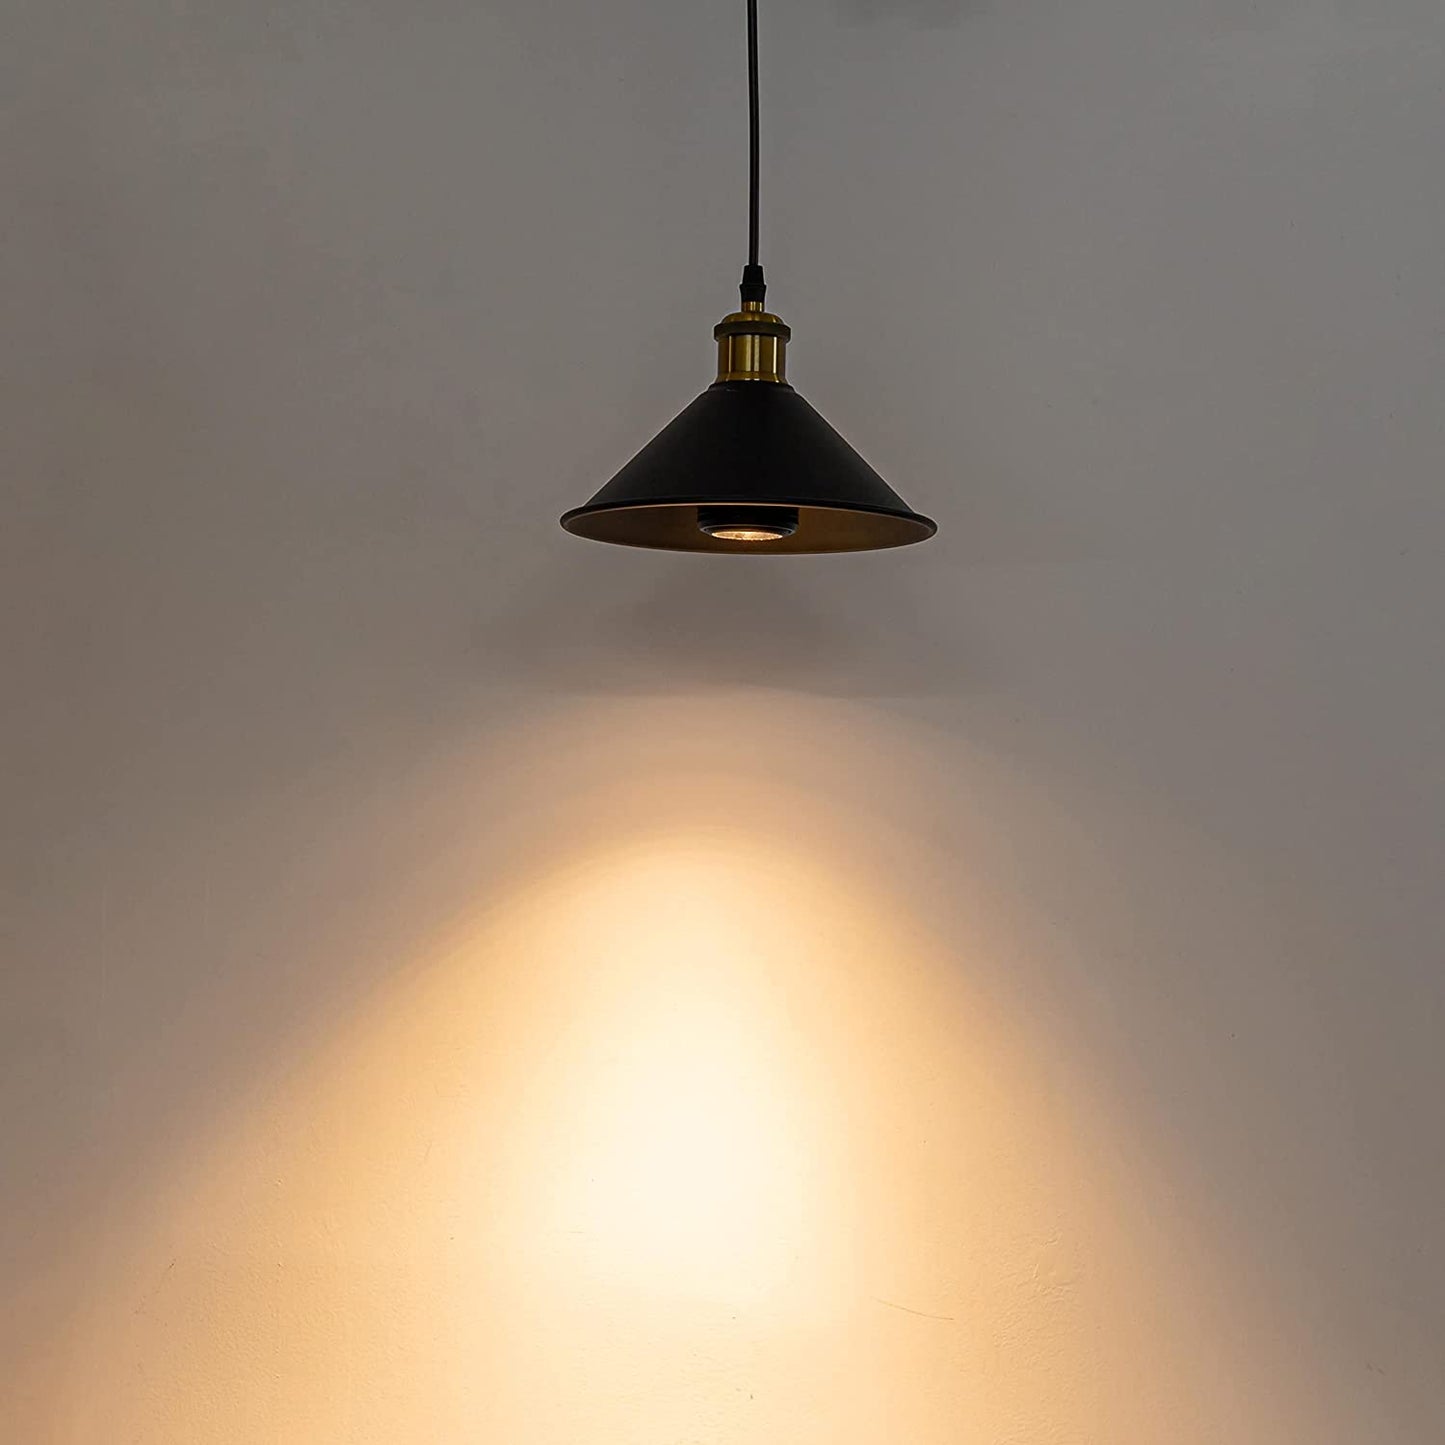 LED電球 スポットライト リモコン E26 7W LED 電球 配光角度調整可能 調光&調色機能 COB光源 屋内用 壁 天井 展示 撮影 ブラック